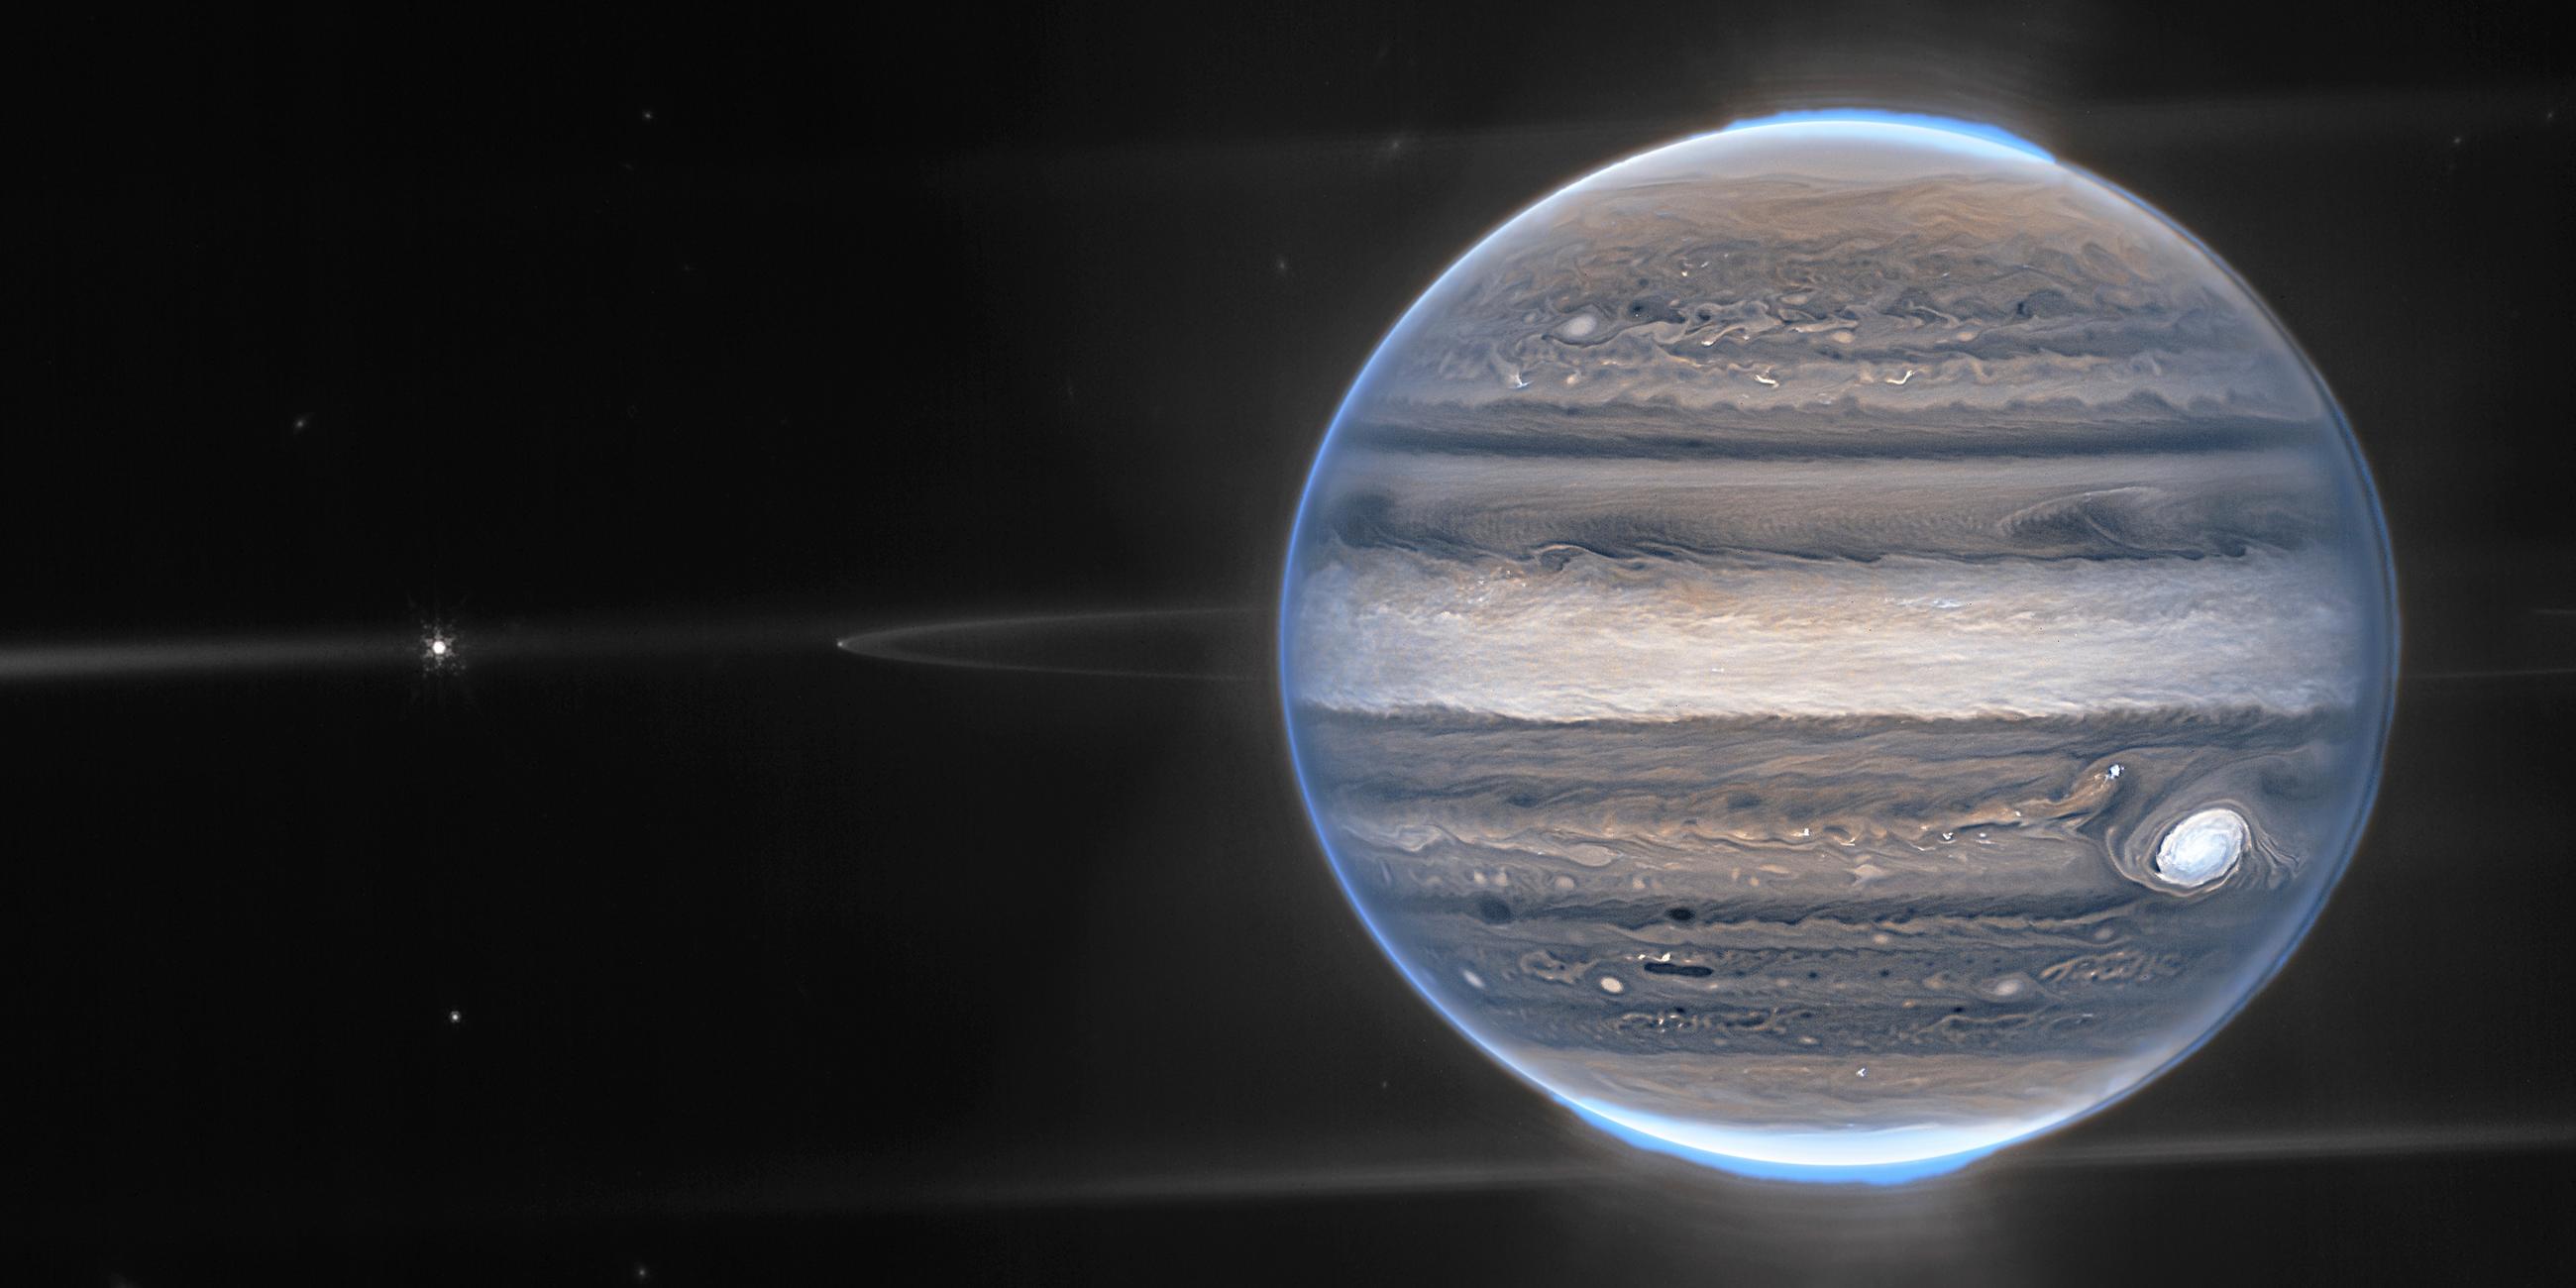 James-Webb-Teleskop nimmt Polarlicht über dem Jupiter auf, aufgenommen am 22.08.2022